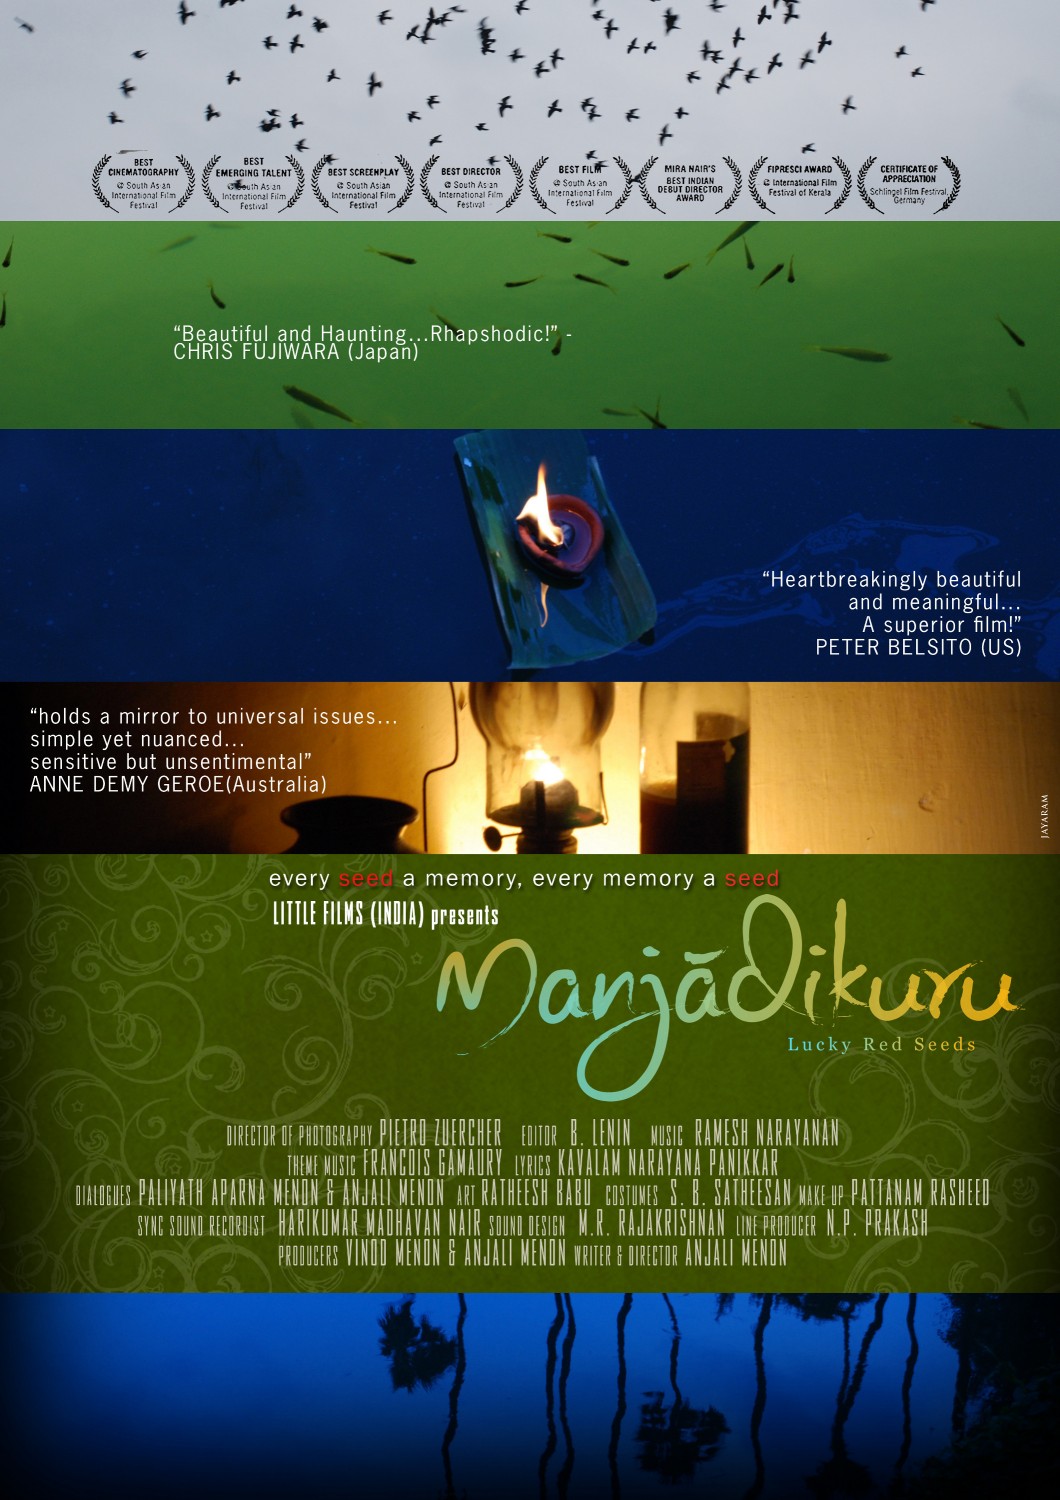 Extra Large Movie Poster Image for Manjadikuru (#1 of 4)